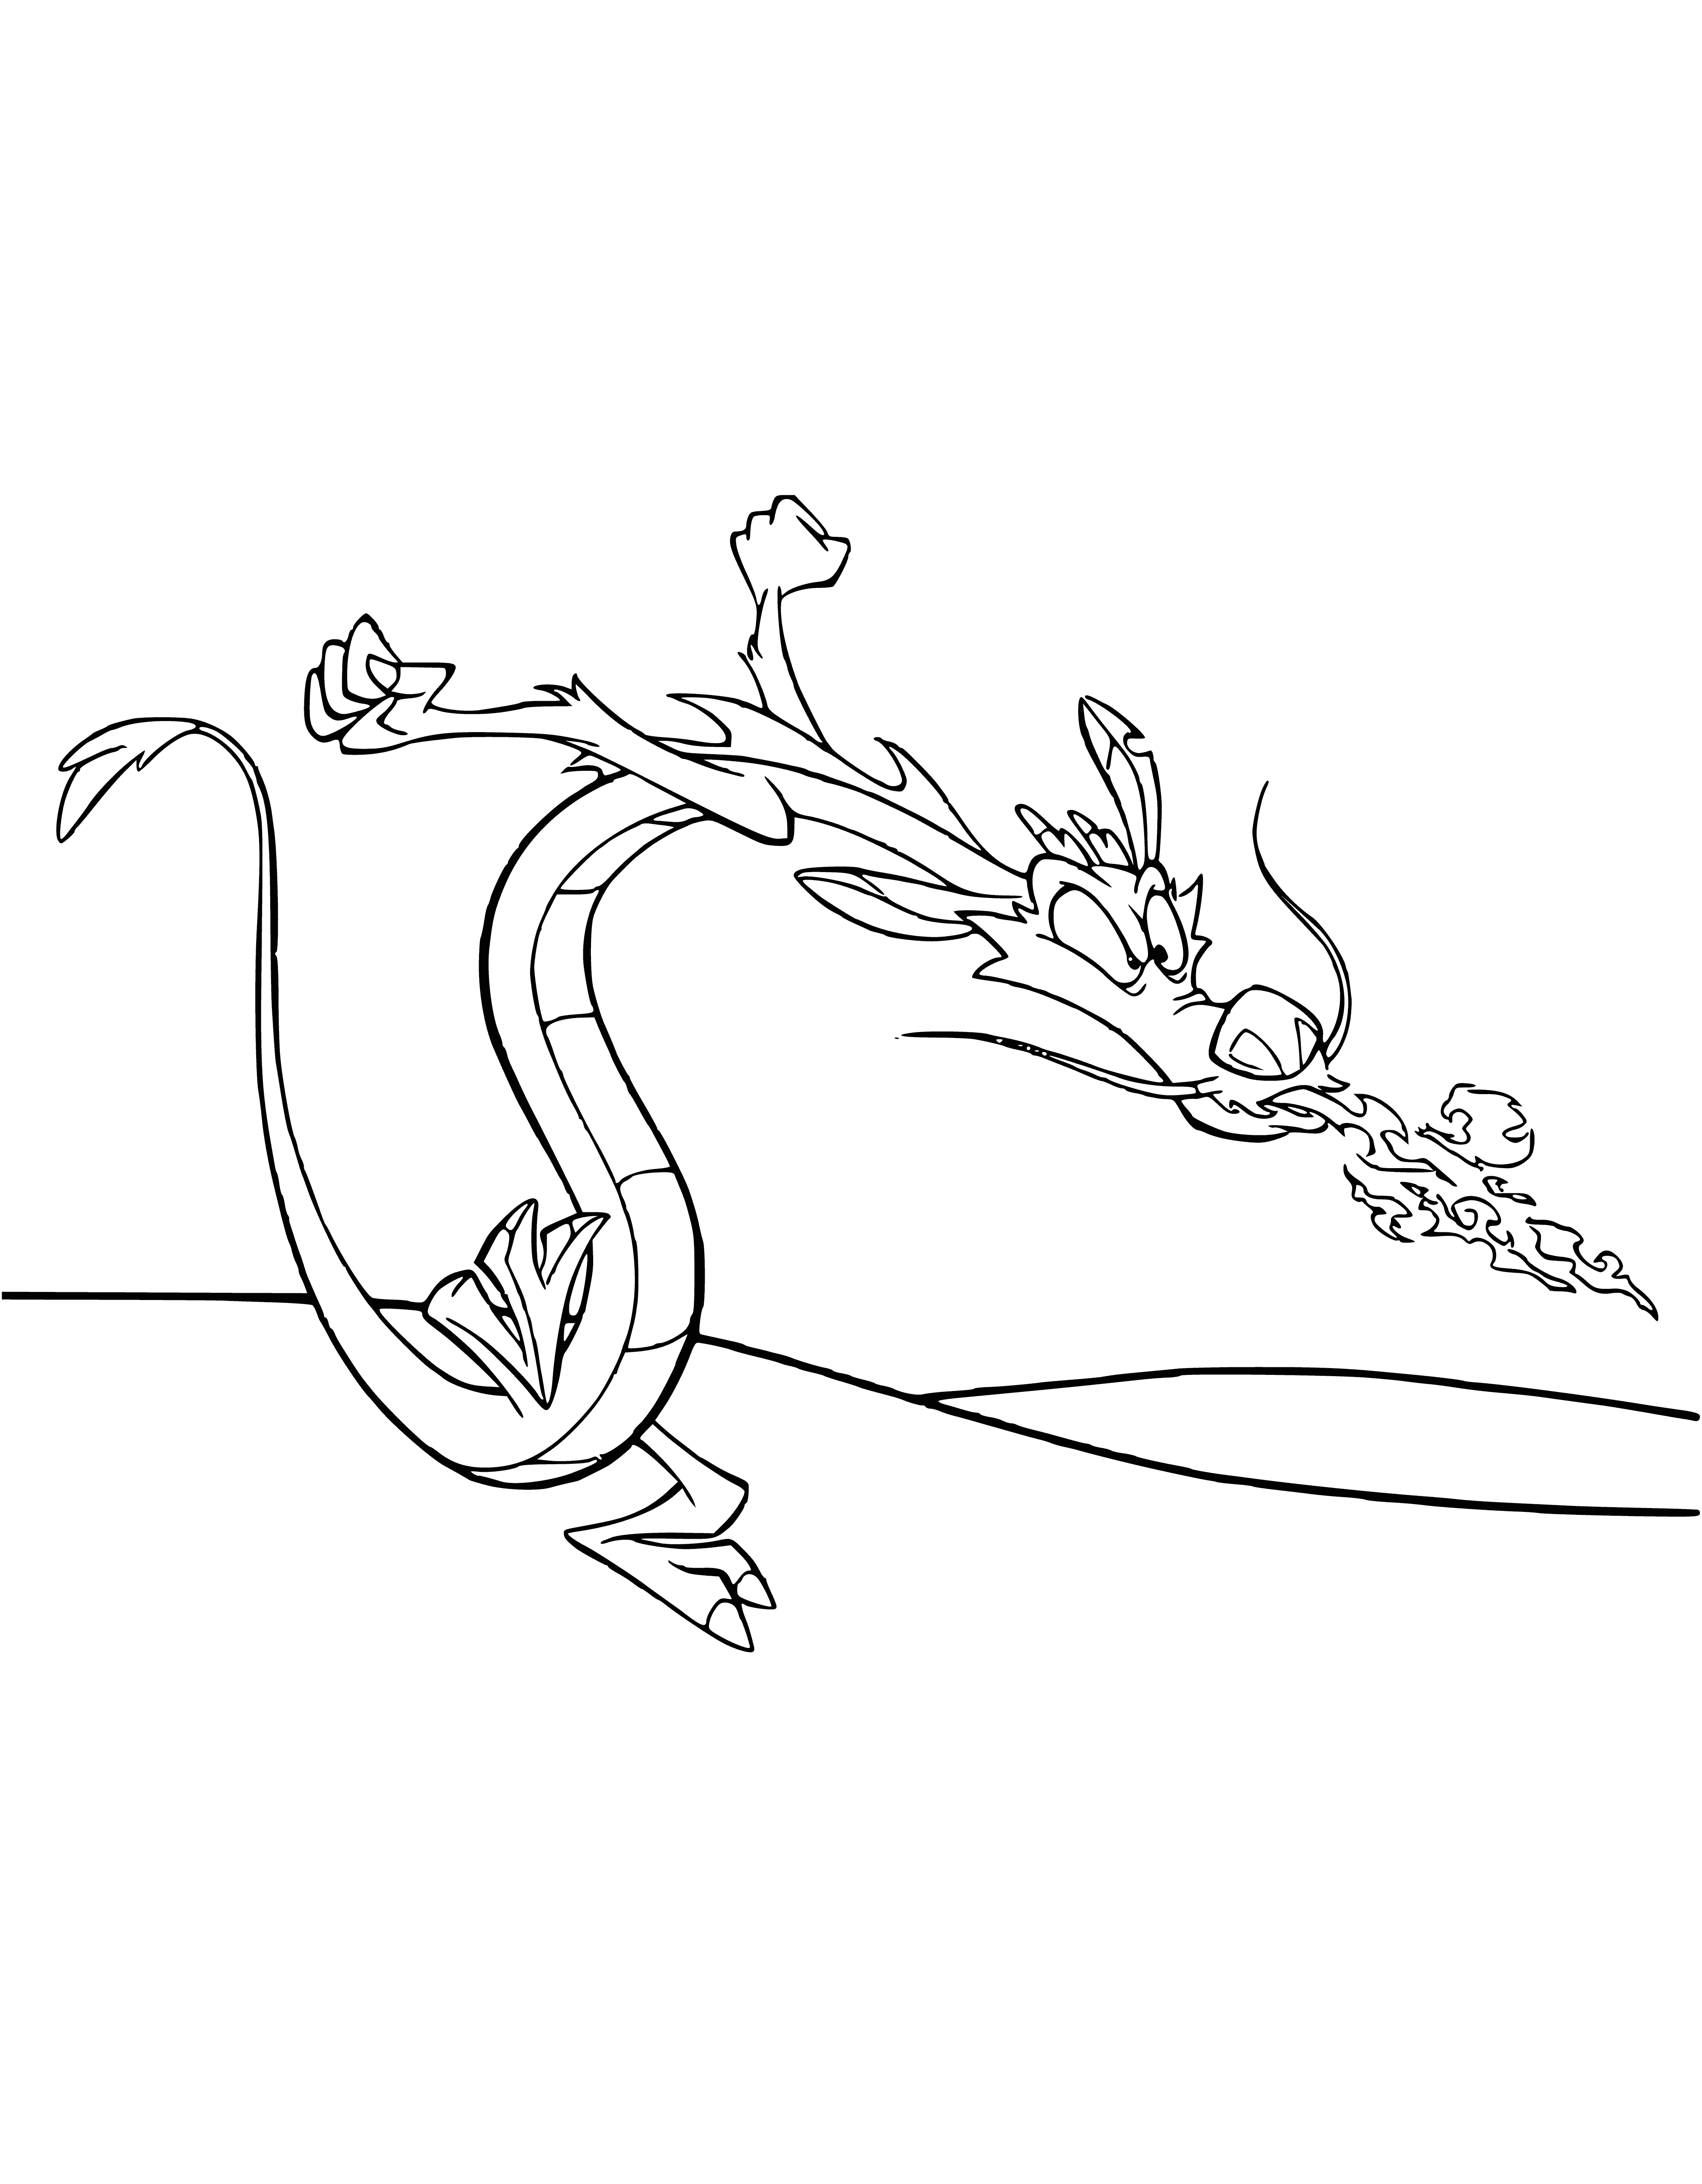 Dragon Mushu coloring page